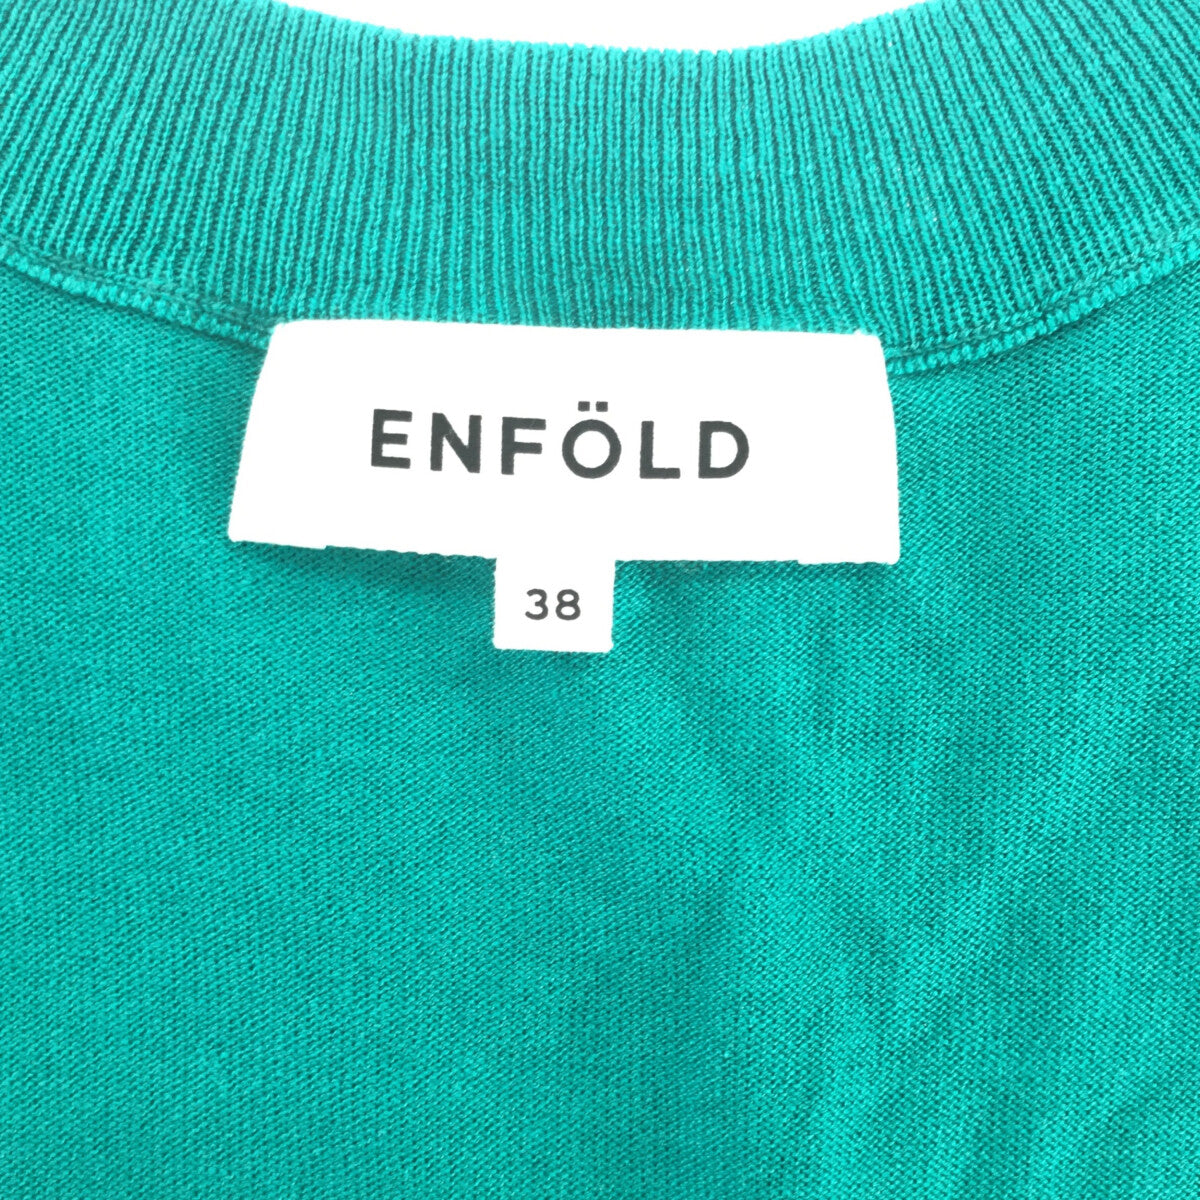 ENFOLD / エンフォルド | シルクコットン VネックワイドPO ニット | 38 | レディース